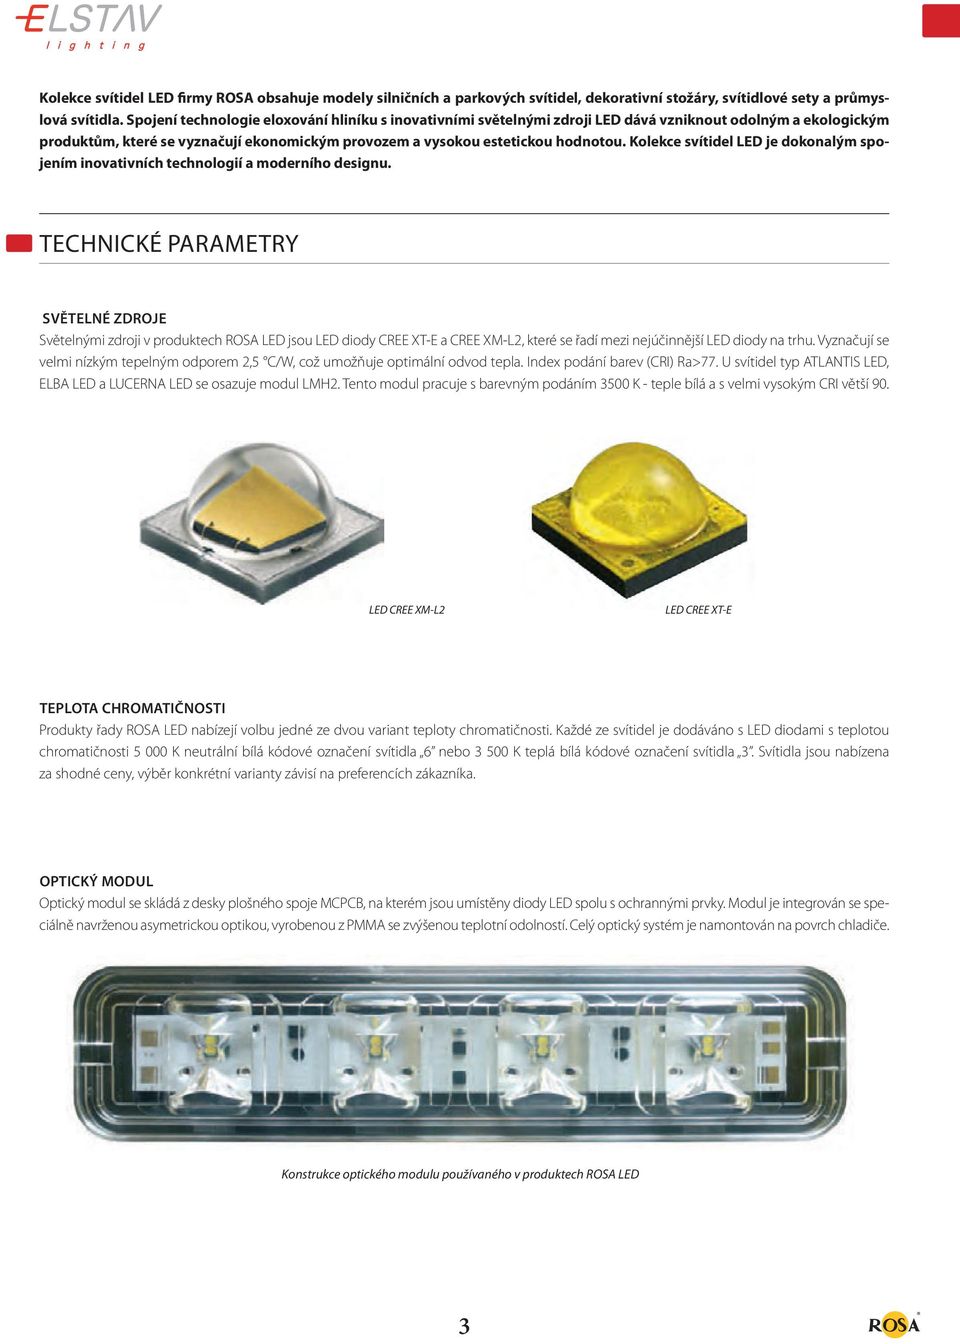 Kolekce svítidel LED je dokonalým spojením inovativních technologií a moderního designu.